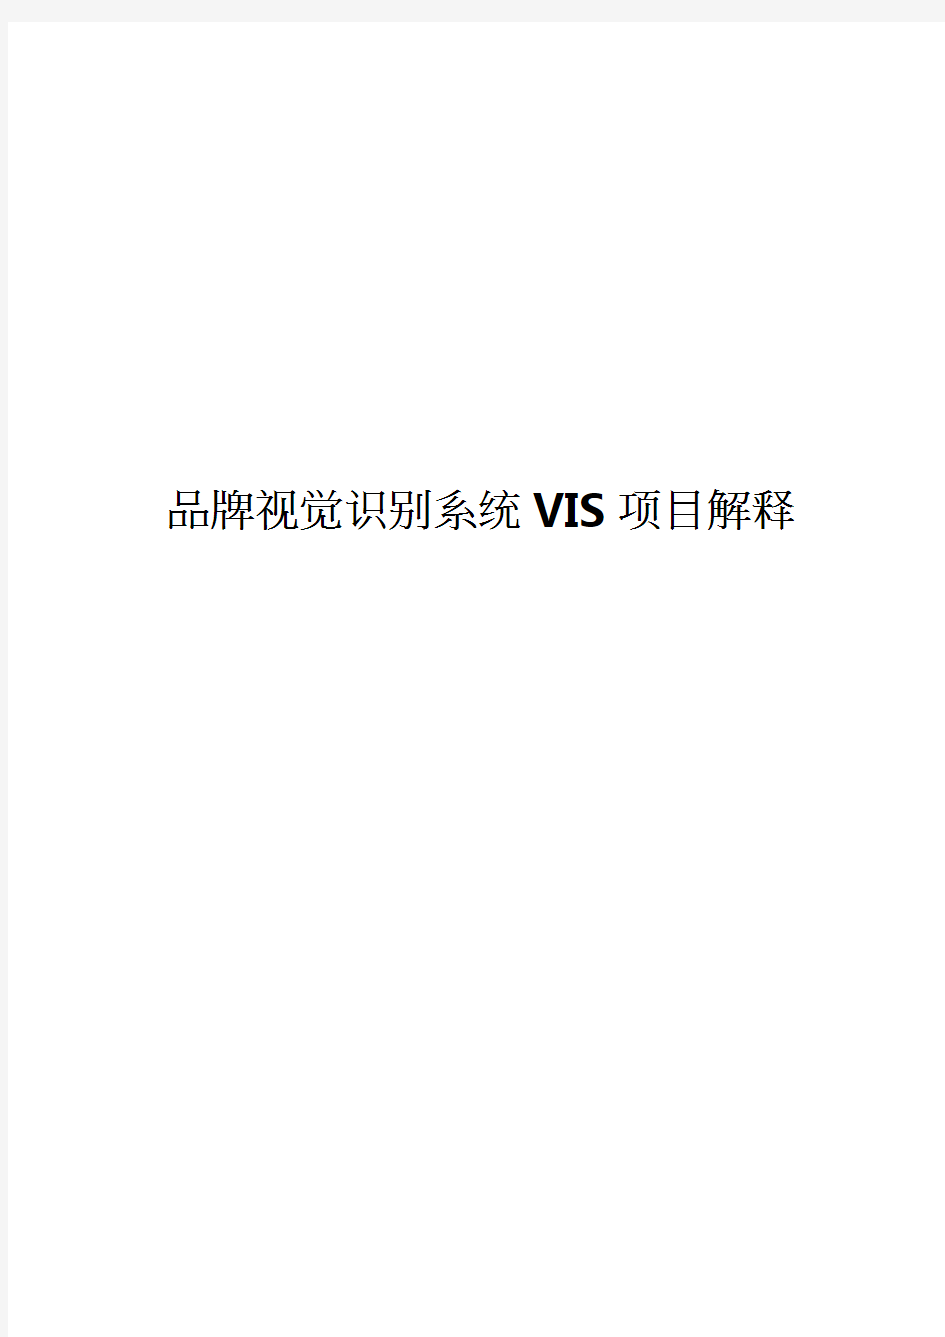 VIS--项目明细解释